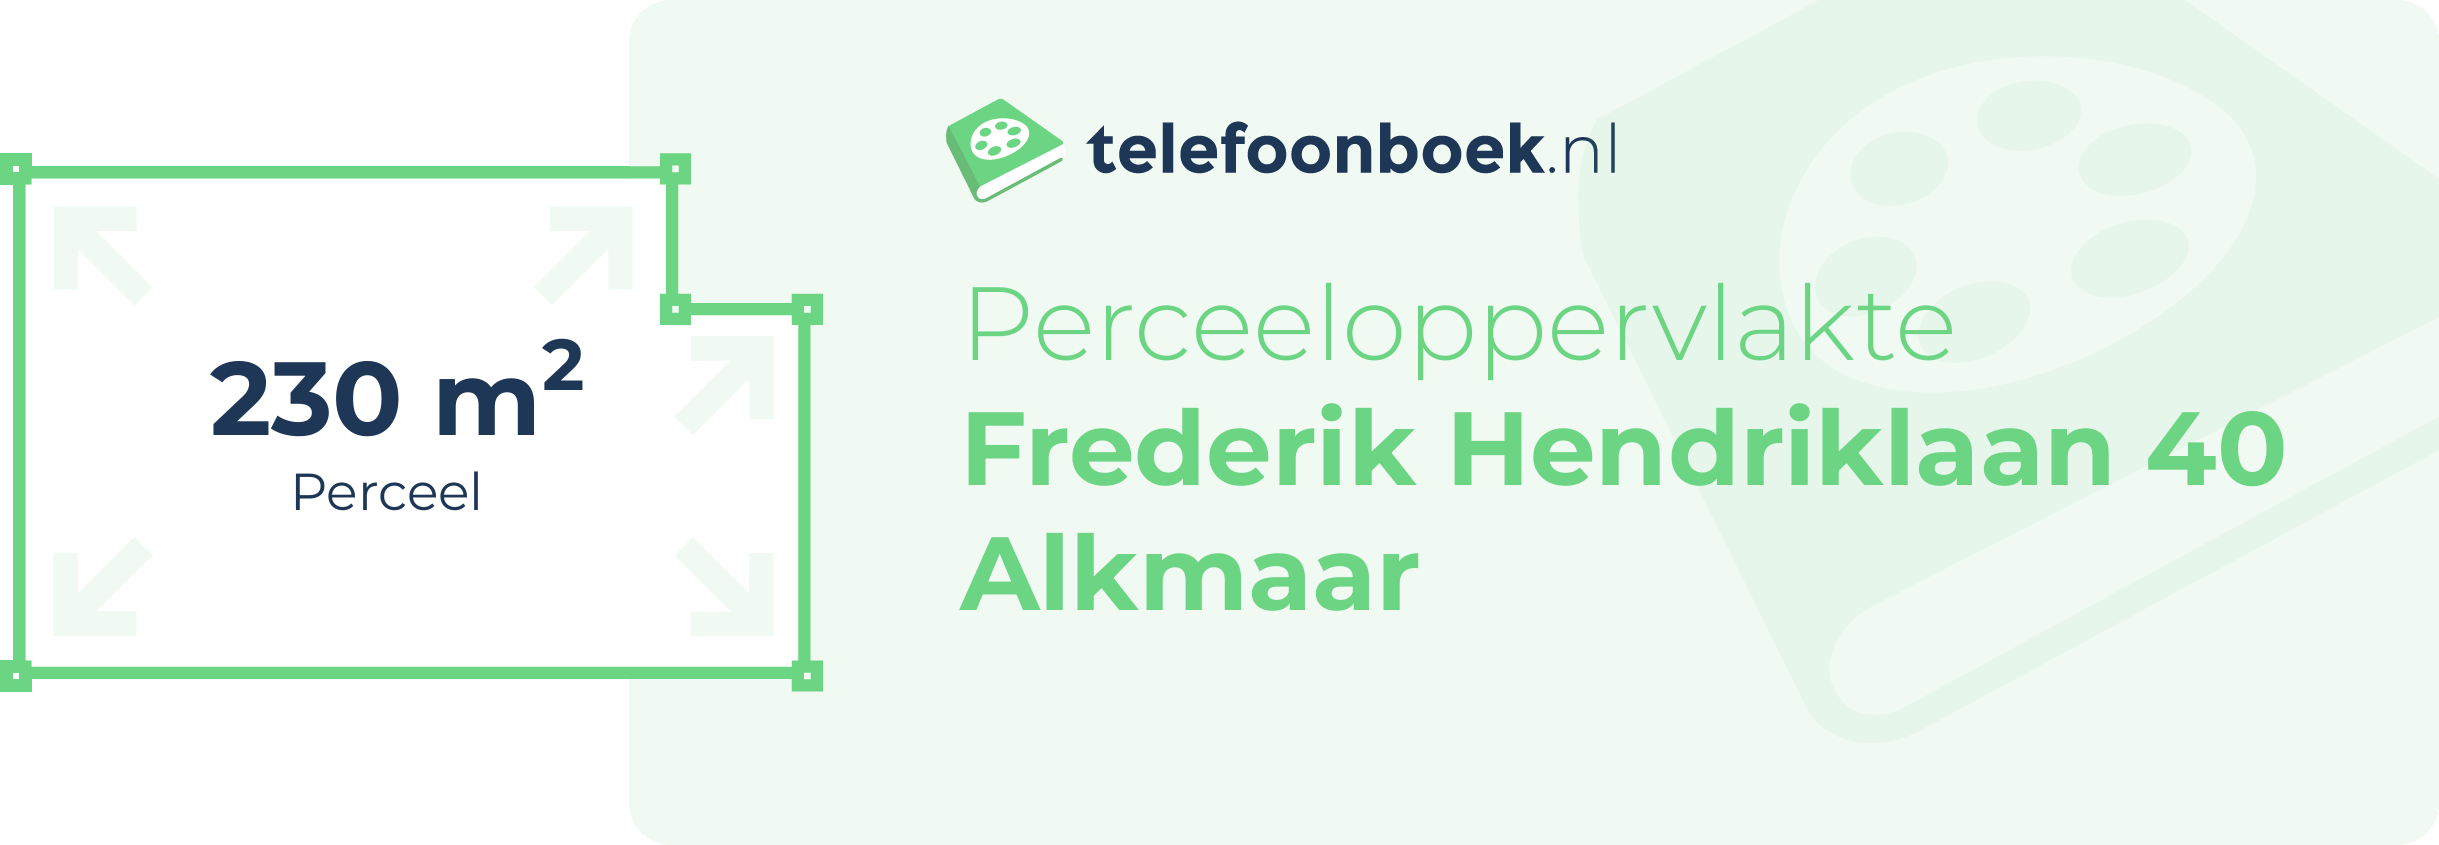 Perceeloppervlakte Frederik Hendriklaan 40 Alkmaar